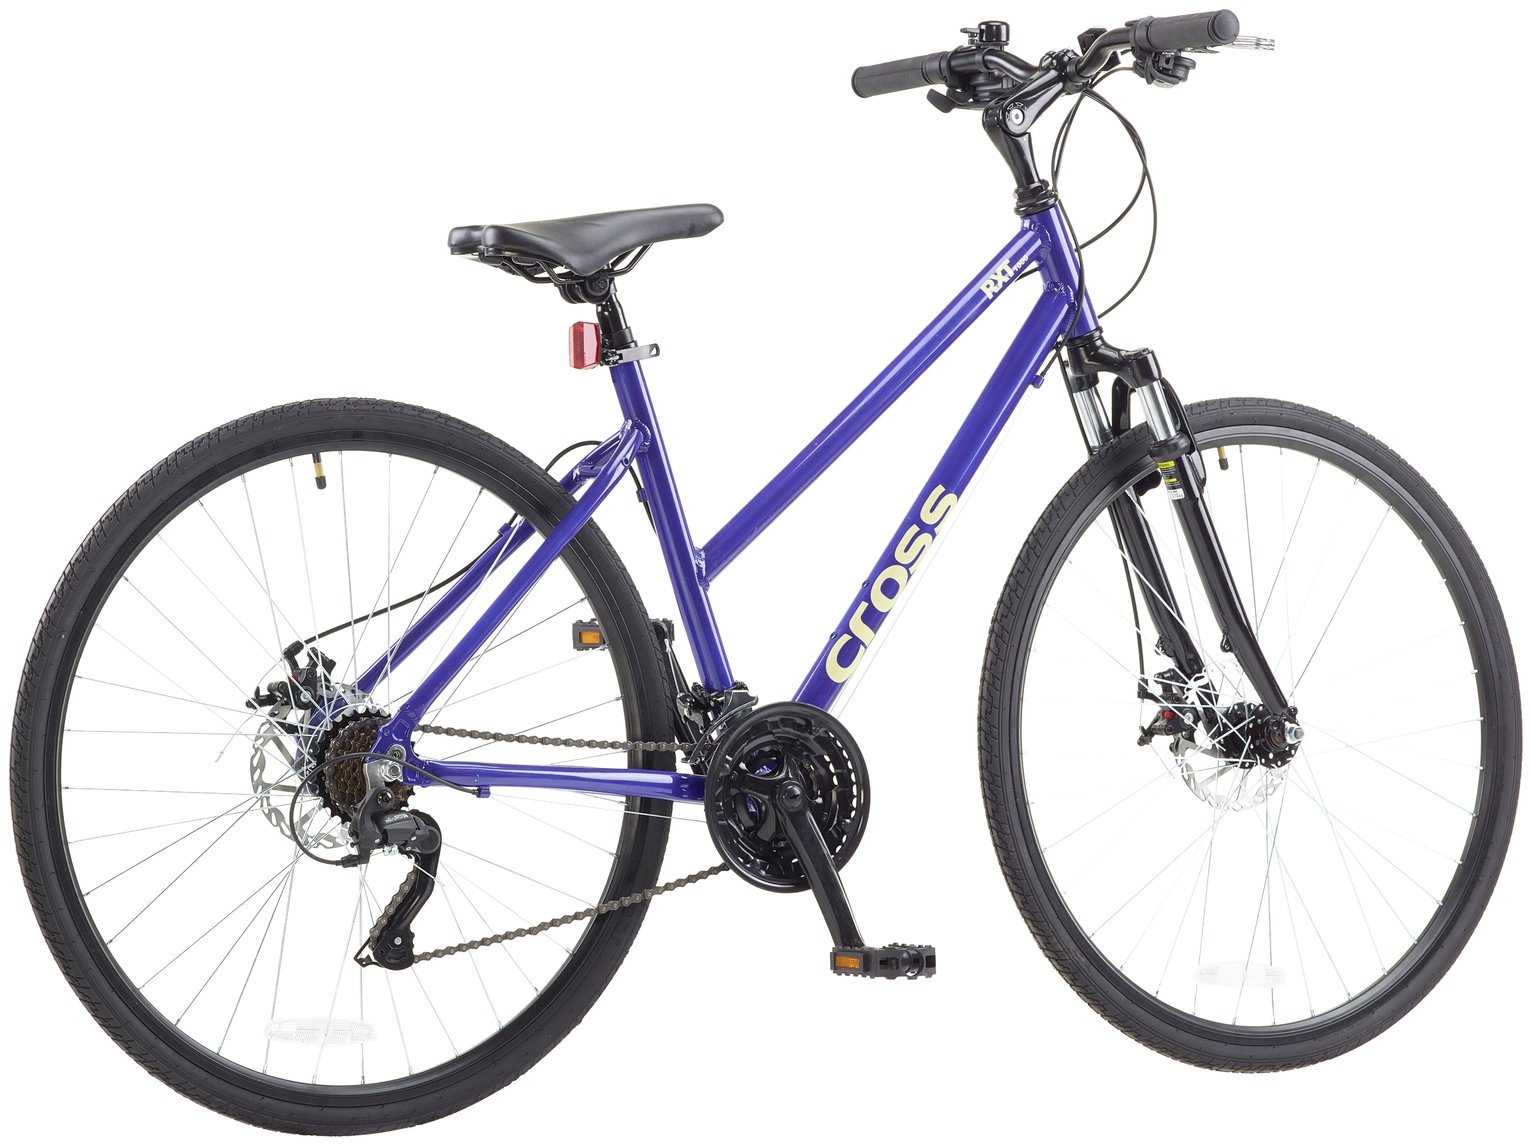 Cross 28 inch Wheel Size Womens Hybrid Bike